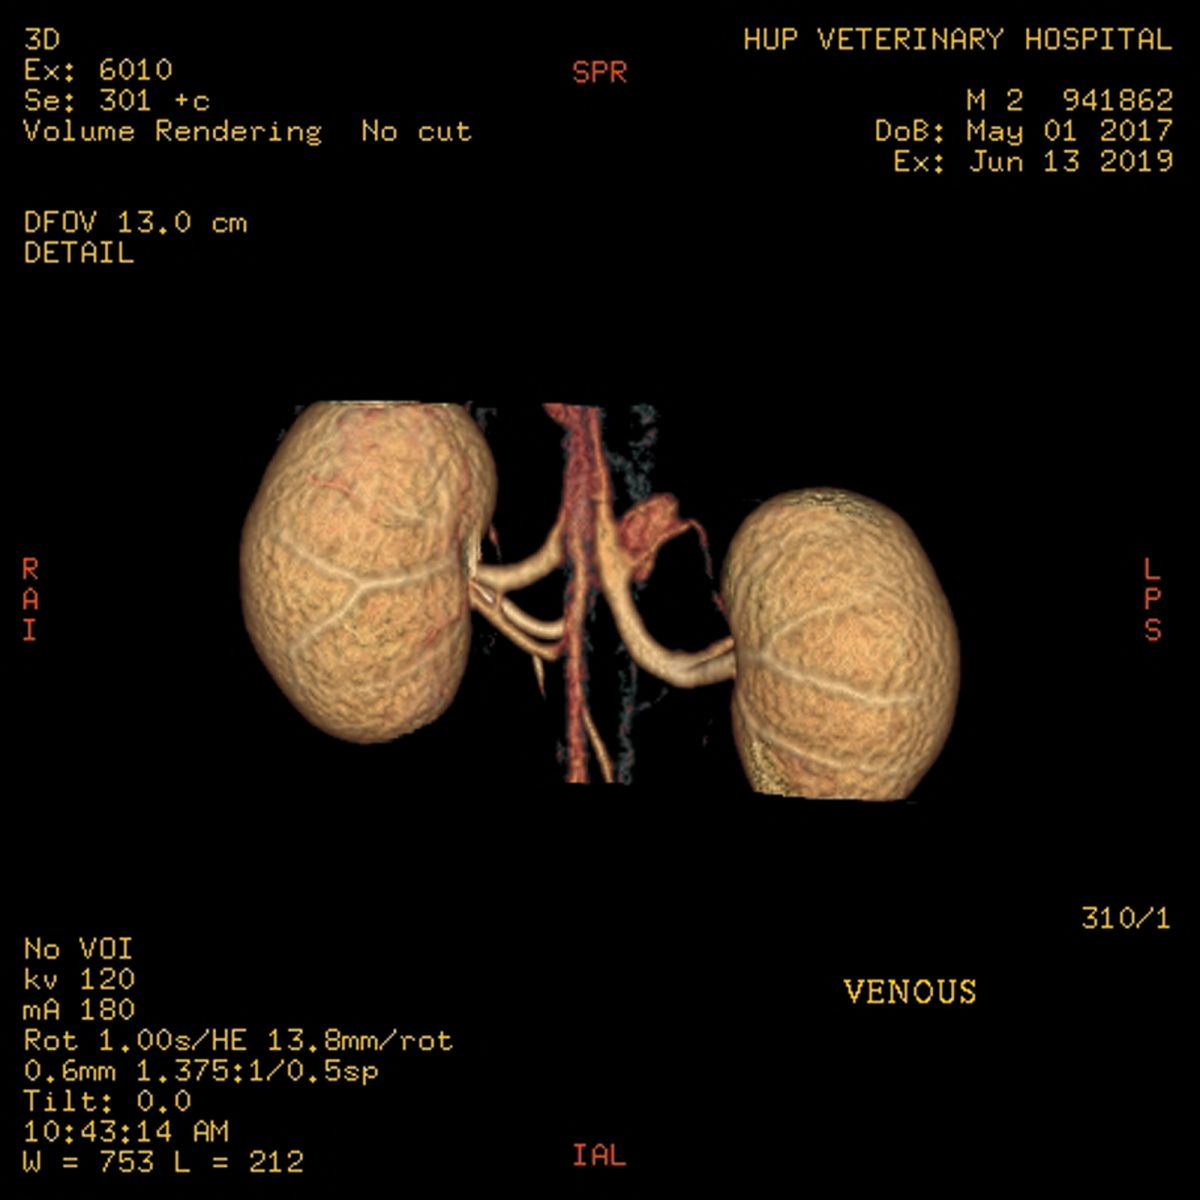 CT– Angiographie einer potenziellen Spenderkatze für eine Nierentransplantation. Die venöse Phase identifiziert links eine einzelne Vene mit kurzer Bifurkation unmittelbar vor dem Eintritt in die Niere. Auf der rechten Seite werden drei Venen identifiziert.